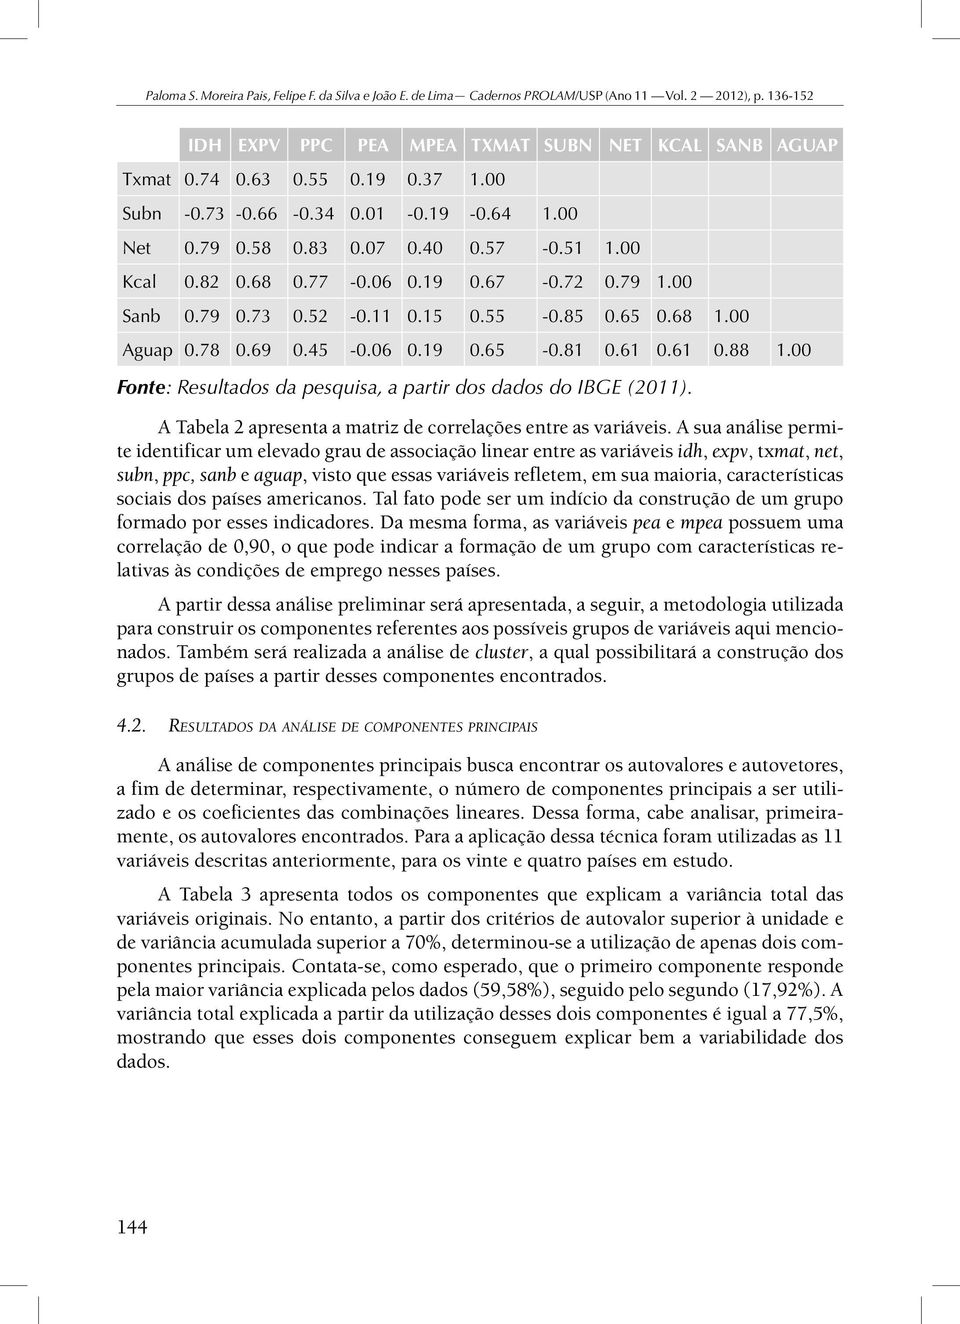 00 Fonte: Resultados da pesquisa, a partir dos dados do IBGE (2011). A Tabela 2 apresenta a matriz de correlações entre as variáveis.